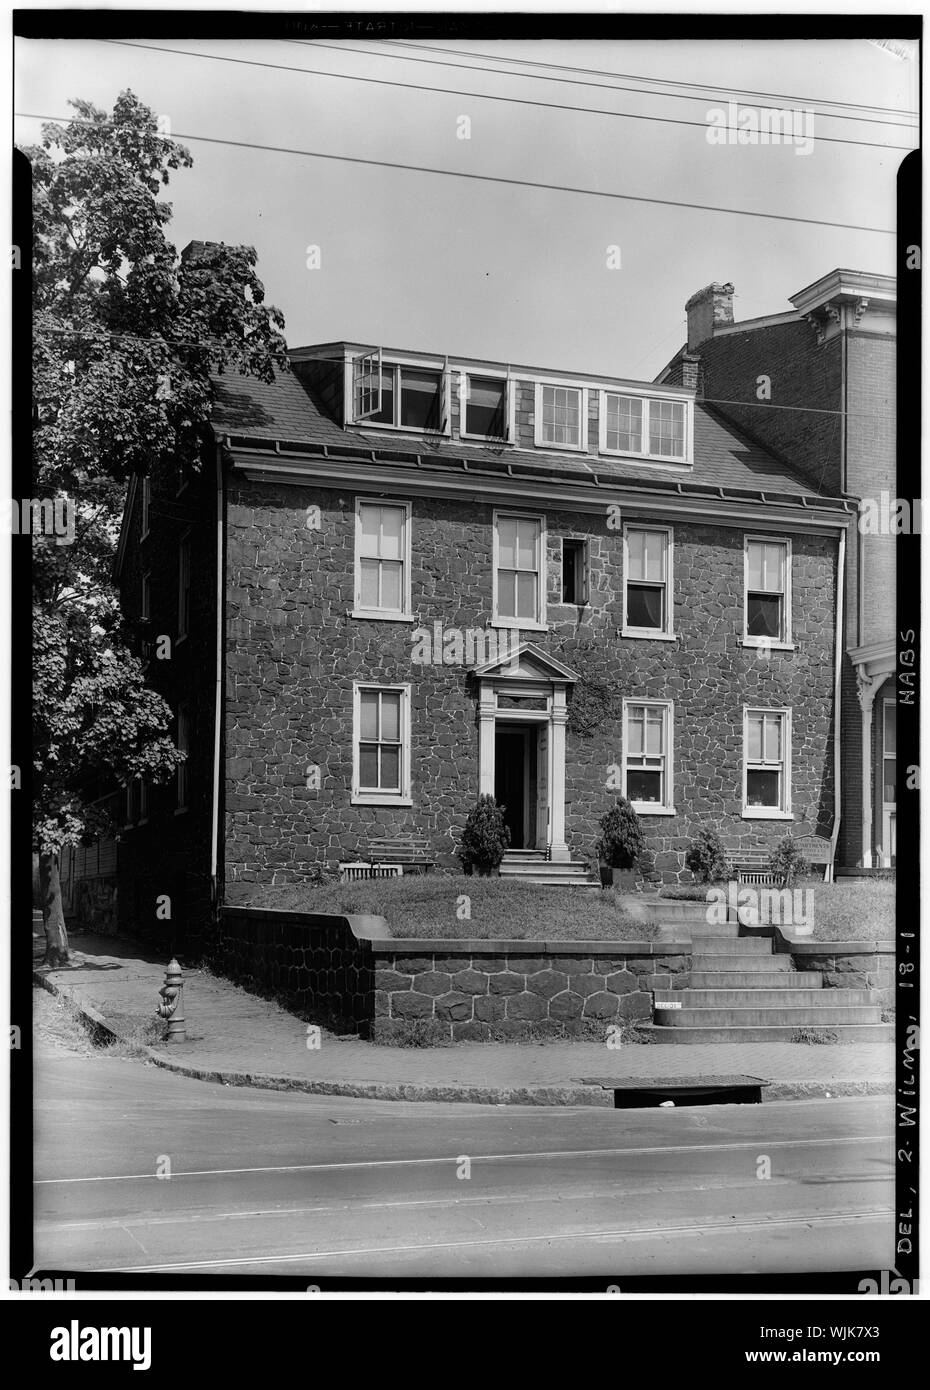 Historischer amerikanischer Gebäude Umfrage W. S. Stewart, Fotograf 12.08.25, von 1936 ANSICHT SÜDOST - William Lea House, 1901 North Market Street, Wilmington, New Castle County, DE Stockfoto